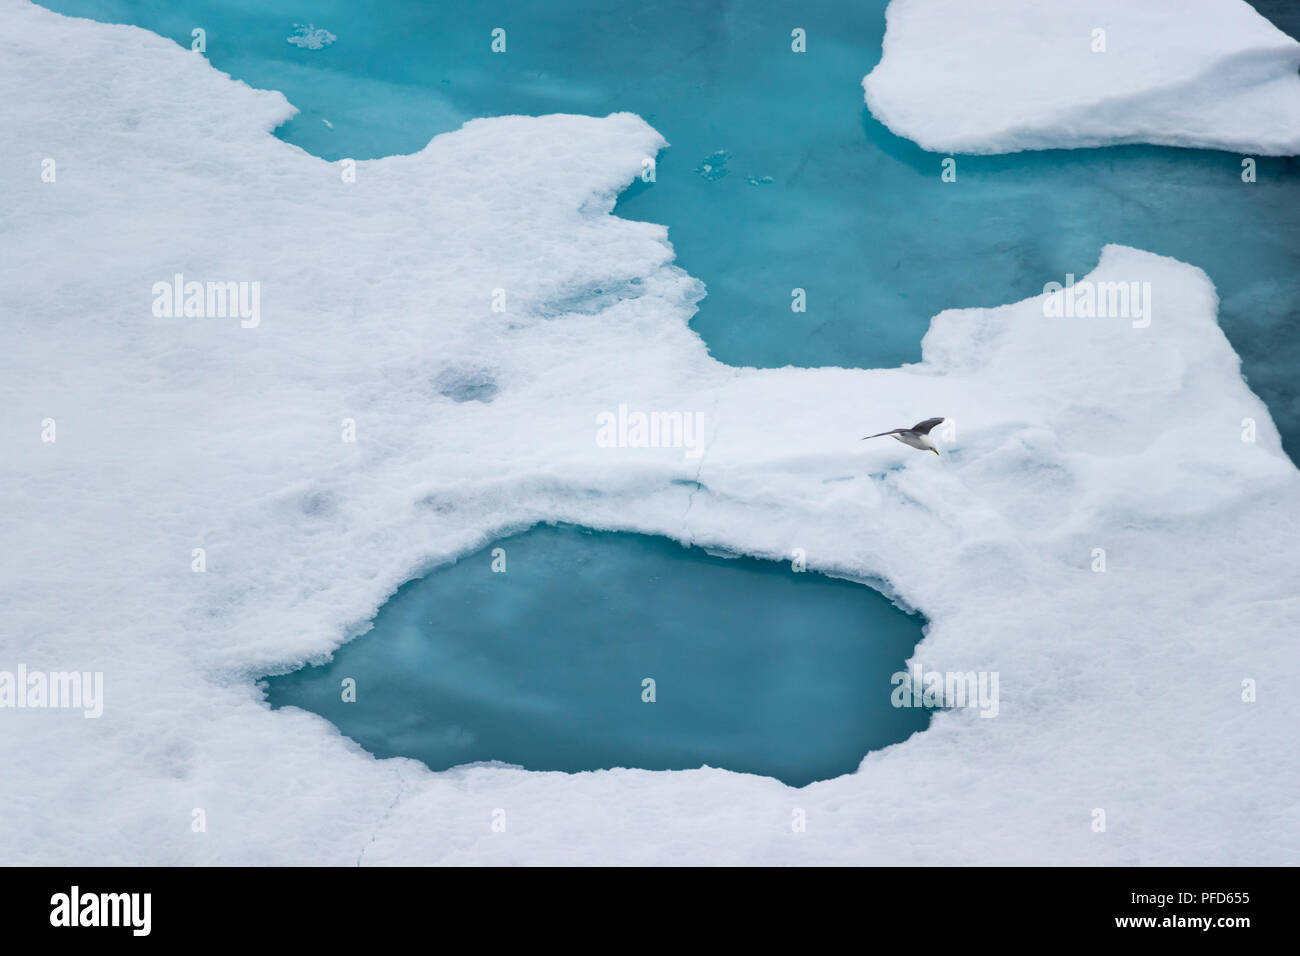 Las patas negras kittiwake (Rissa tridactyla) volando sobre el hielo en el Océano Ártico, a 82 grados de latitud norte y 022 grados Este. Foto de stock